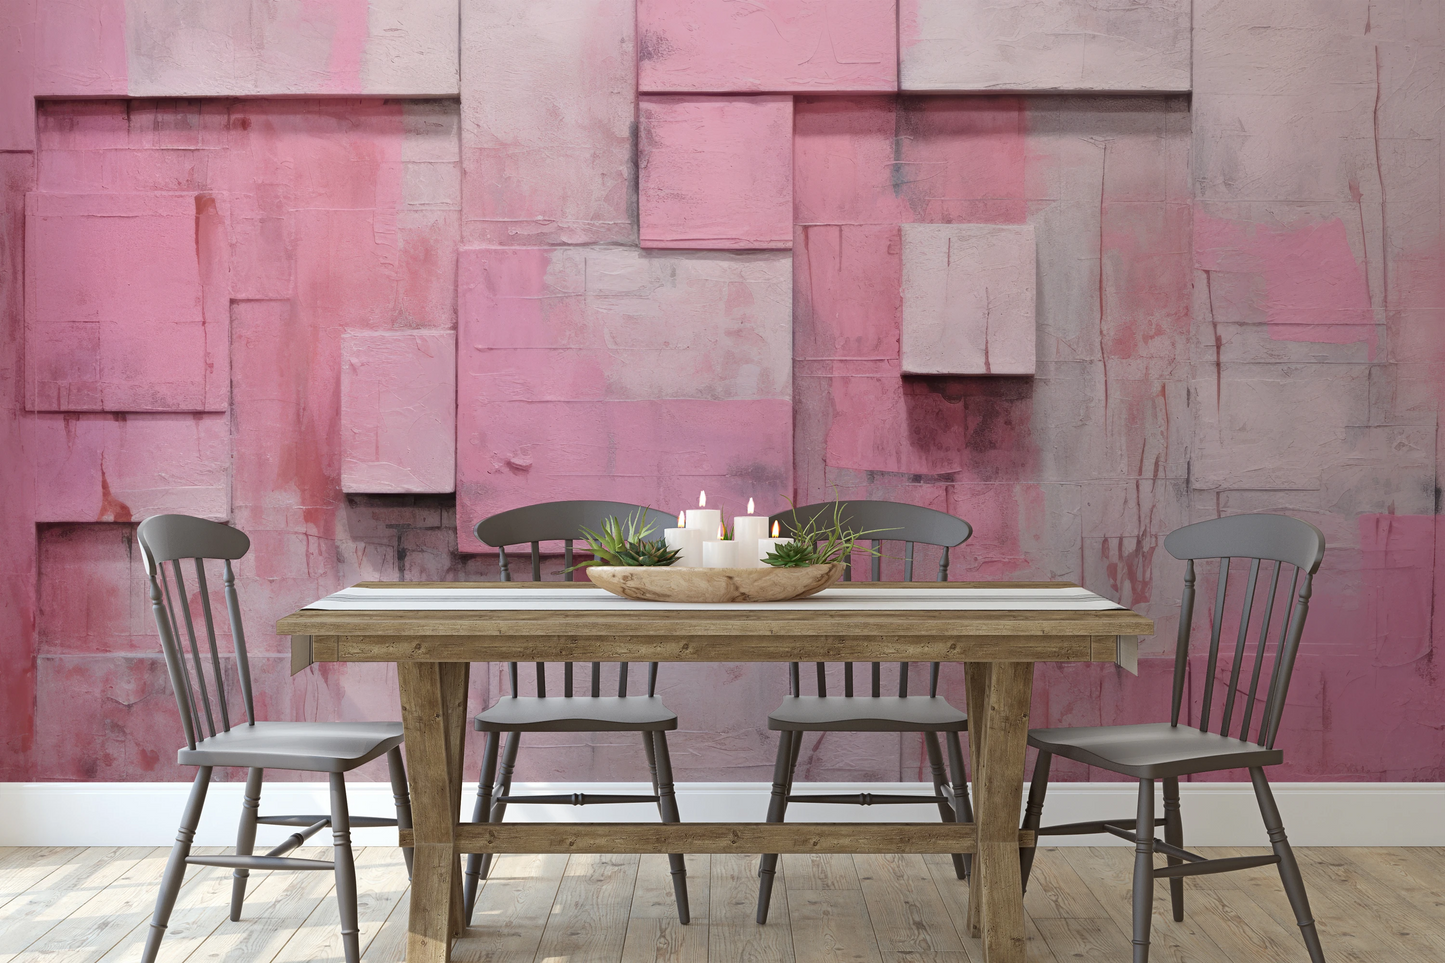 Fototapeta malowana o nazwie Pink Bricks pokazana w aranżacji wnętrza.